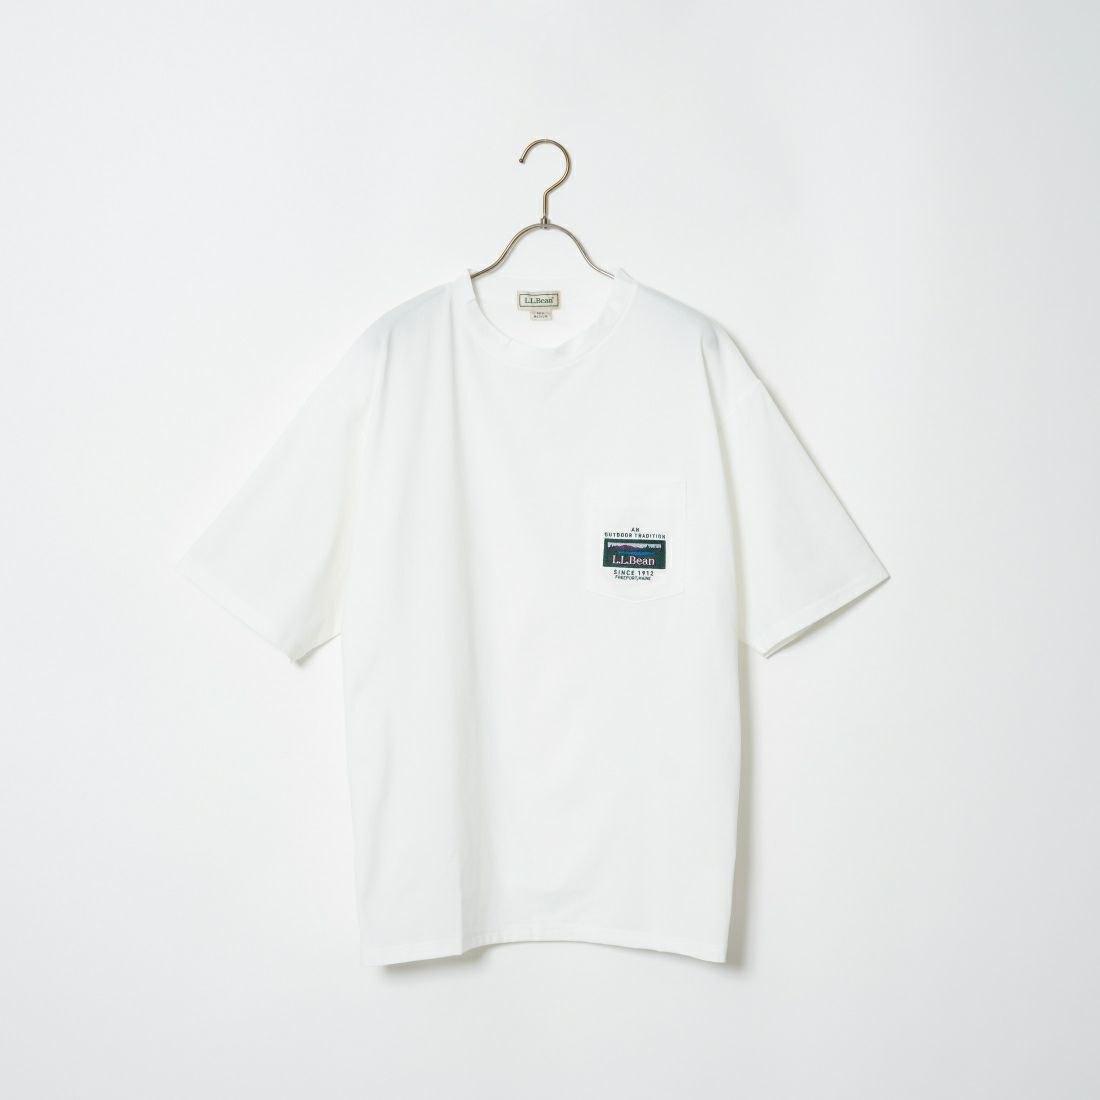 L.L.BEAN [エルエルビーン] カタディン ポケットTシャツ [4275-6070] 9 WHITE